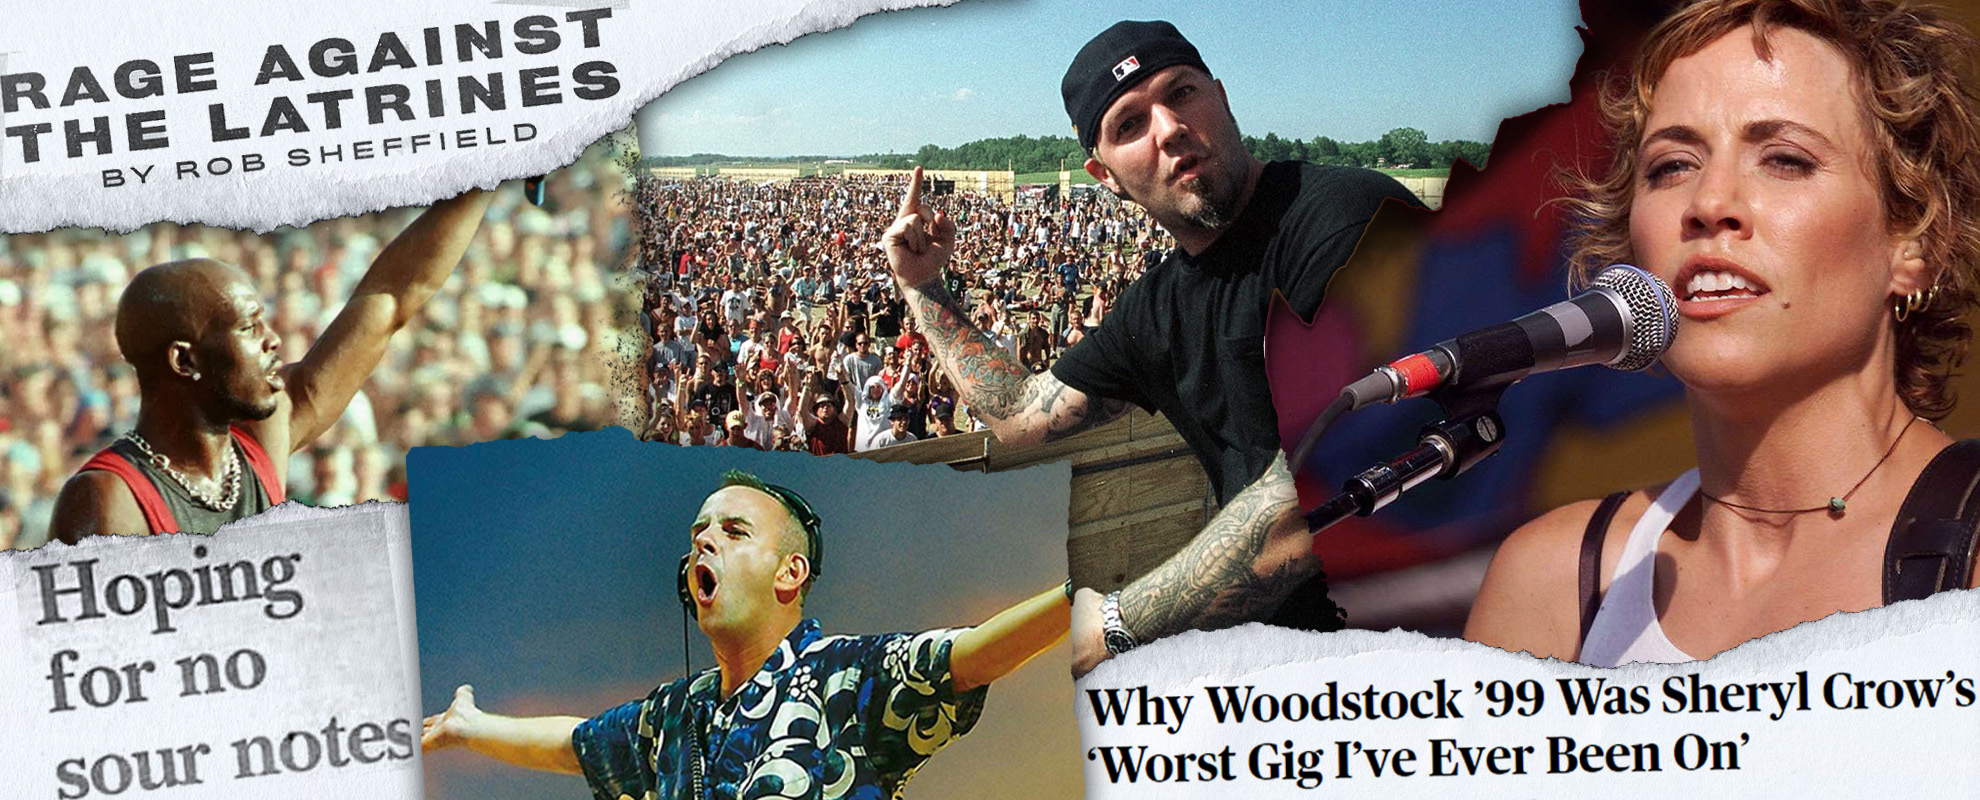 Woodstock '99, ou la fin d'un monde en mode chaos mercantile - Alworld.fr